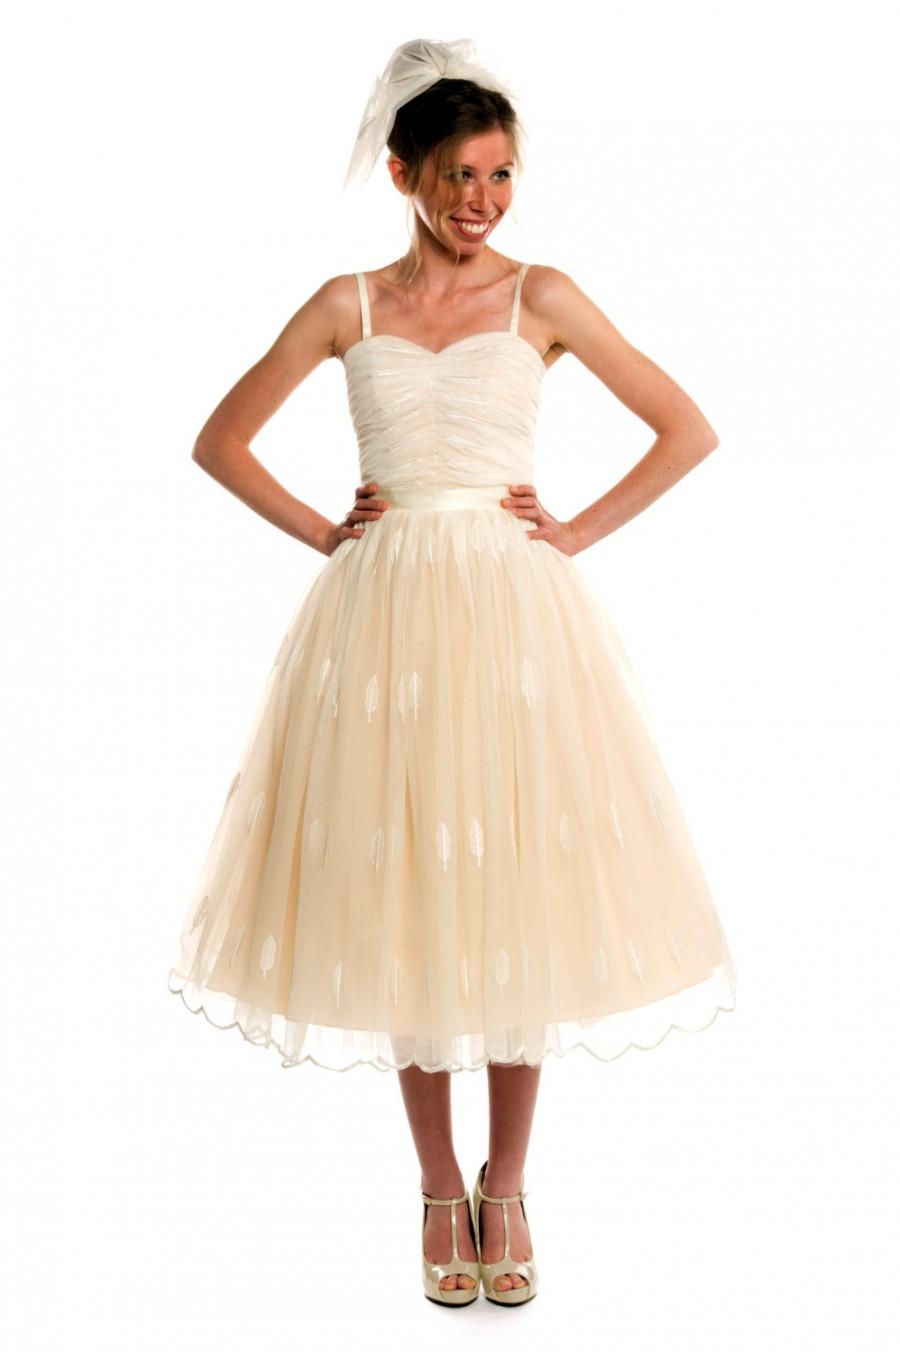 زفاف - Autumn Leaves Fall Wedding Dress, Tea Length, Custom Made to Order in your size